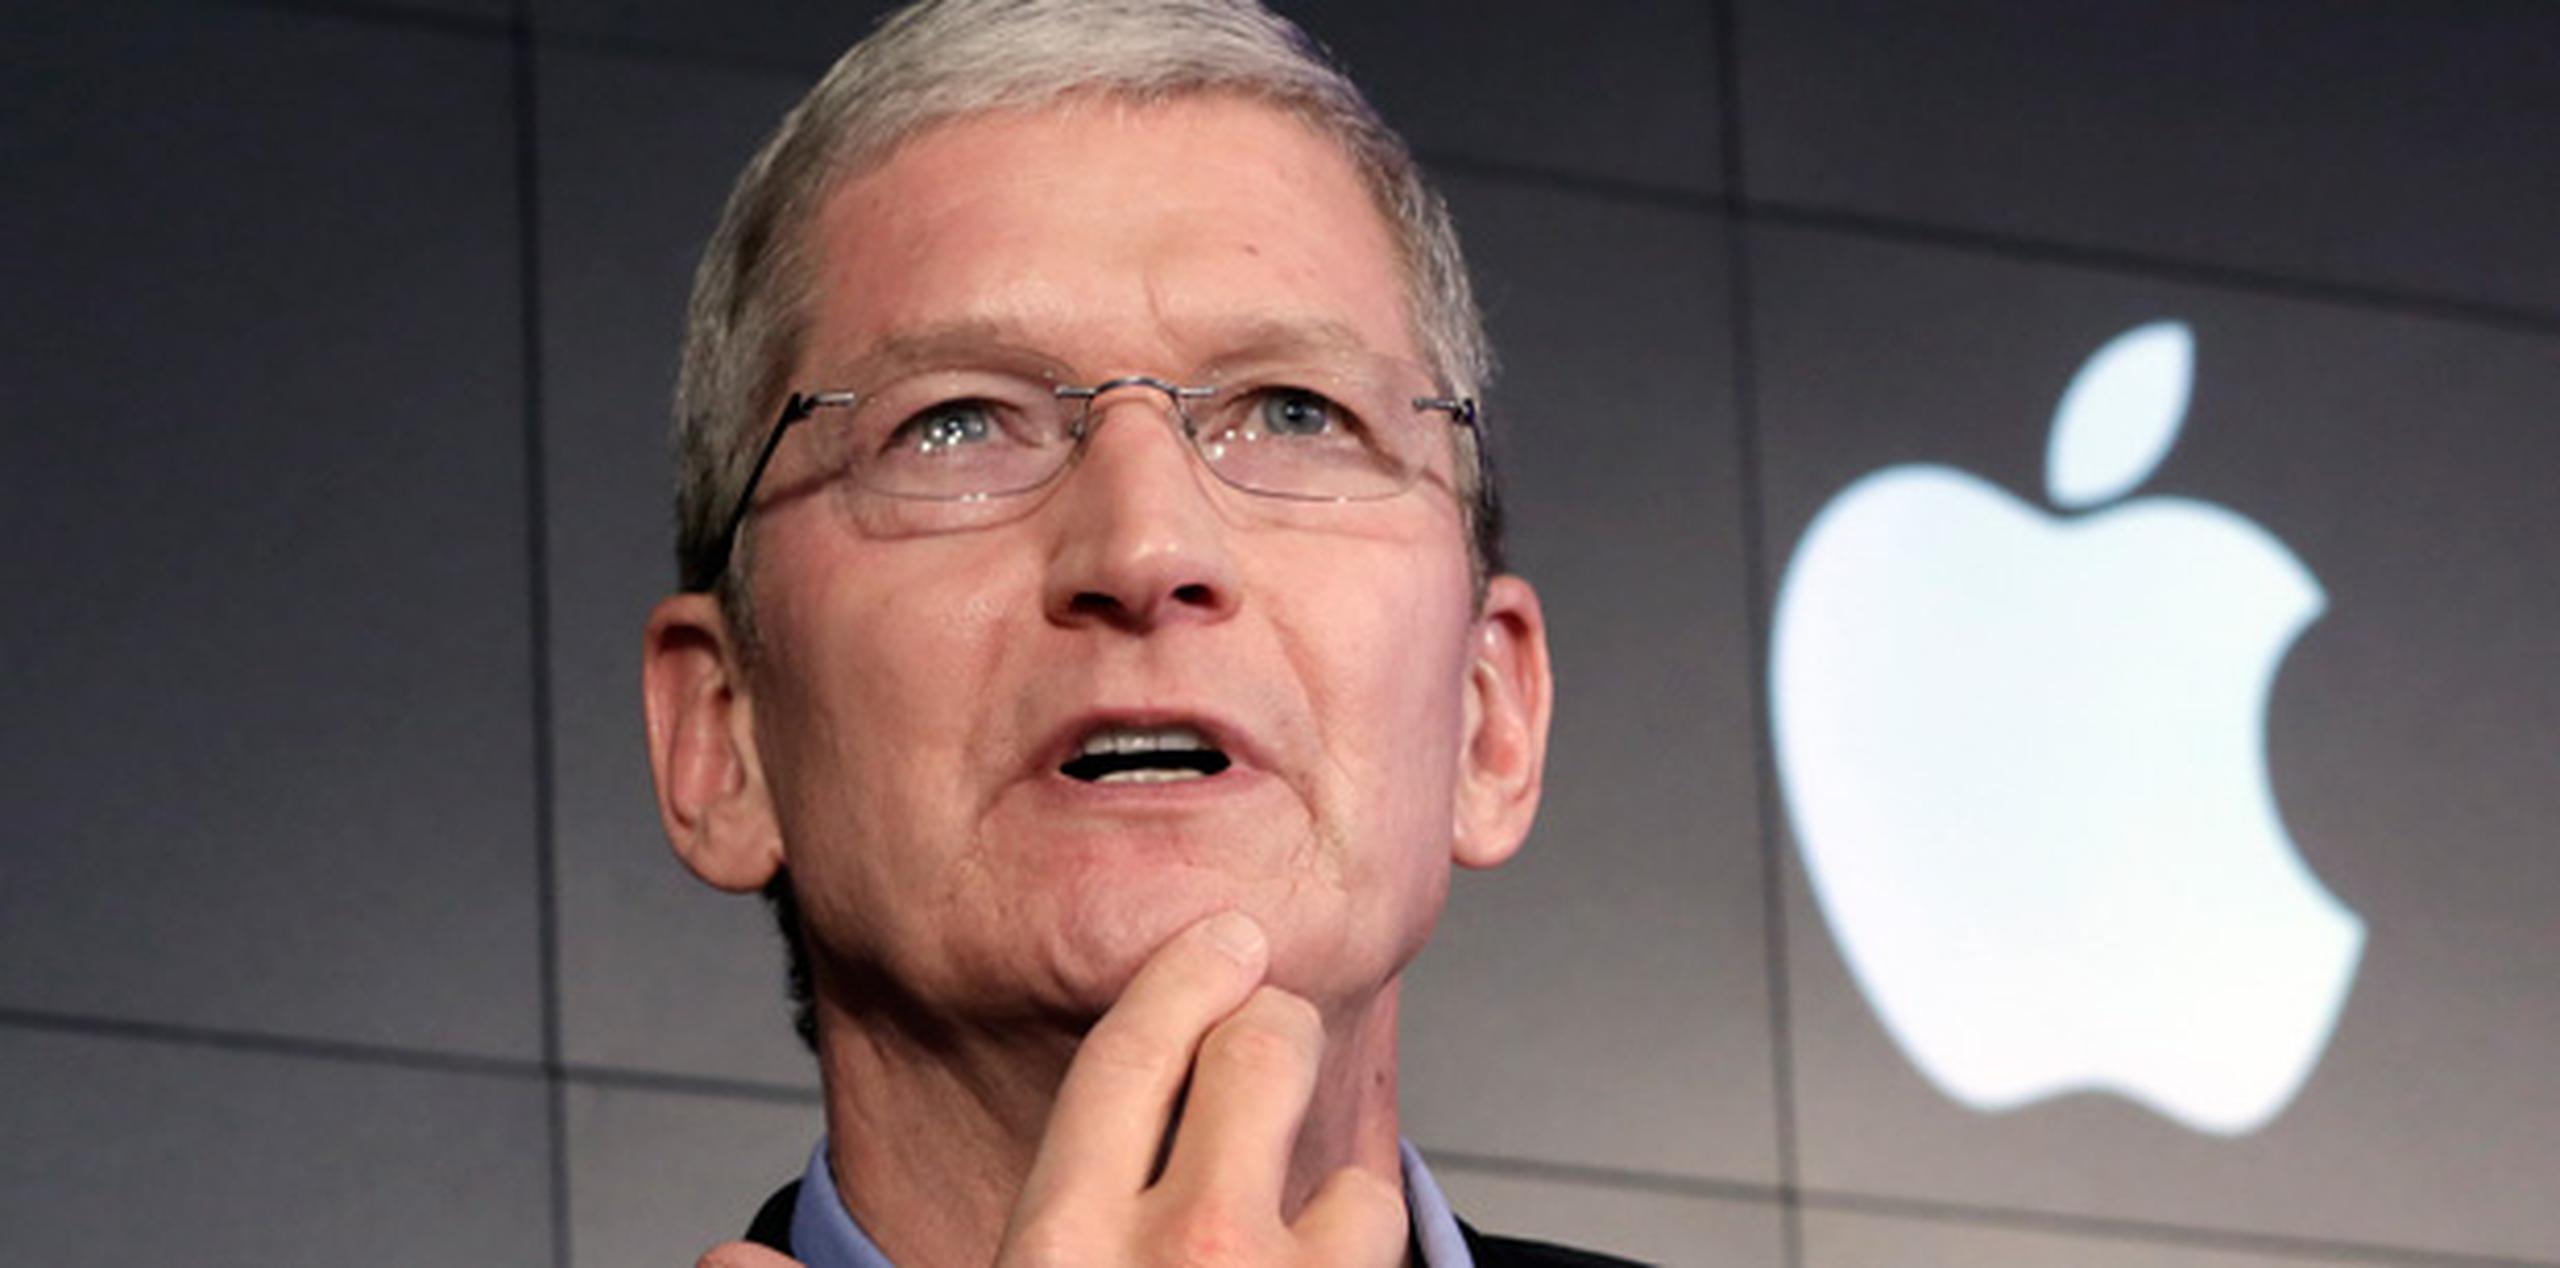 En un comunicado emitido por su director ejecutivo, Tim Cook, Apple afirma que la orden emitida por el FBI, que investiga el atentado, tendría "graves consecuencias para la seguridad" de los usuarios de la marca tecnológica. (AP)